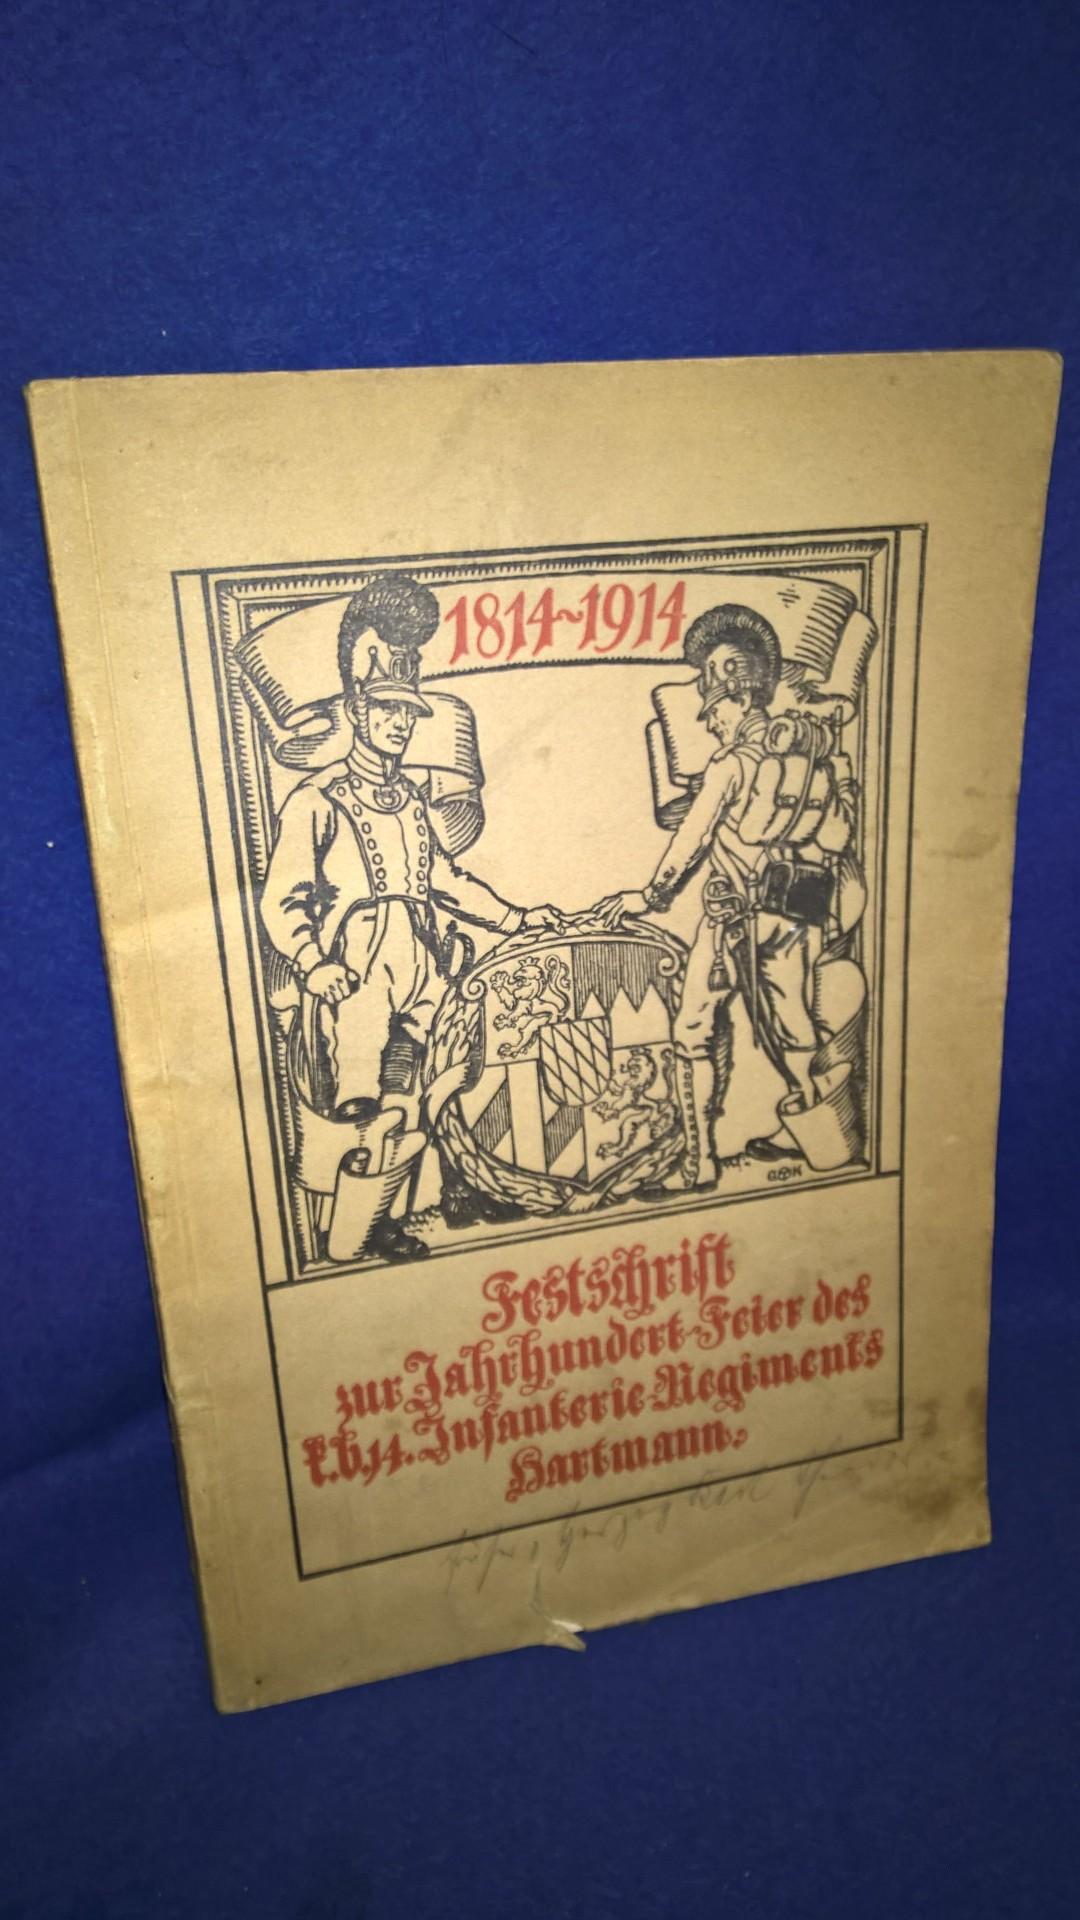 Festschrift zur Jahrhundert-Feier des k.b. 14. Infanterie-Regiments "Hartmann" 1814-1914 vom 11. bis 13. Juli 1914 in Nürnberg